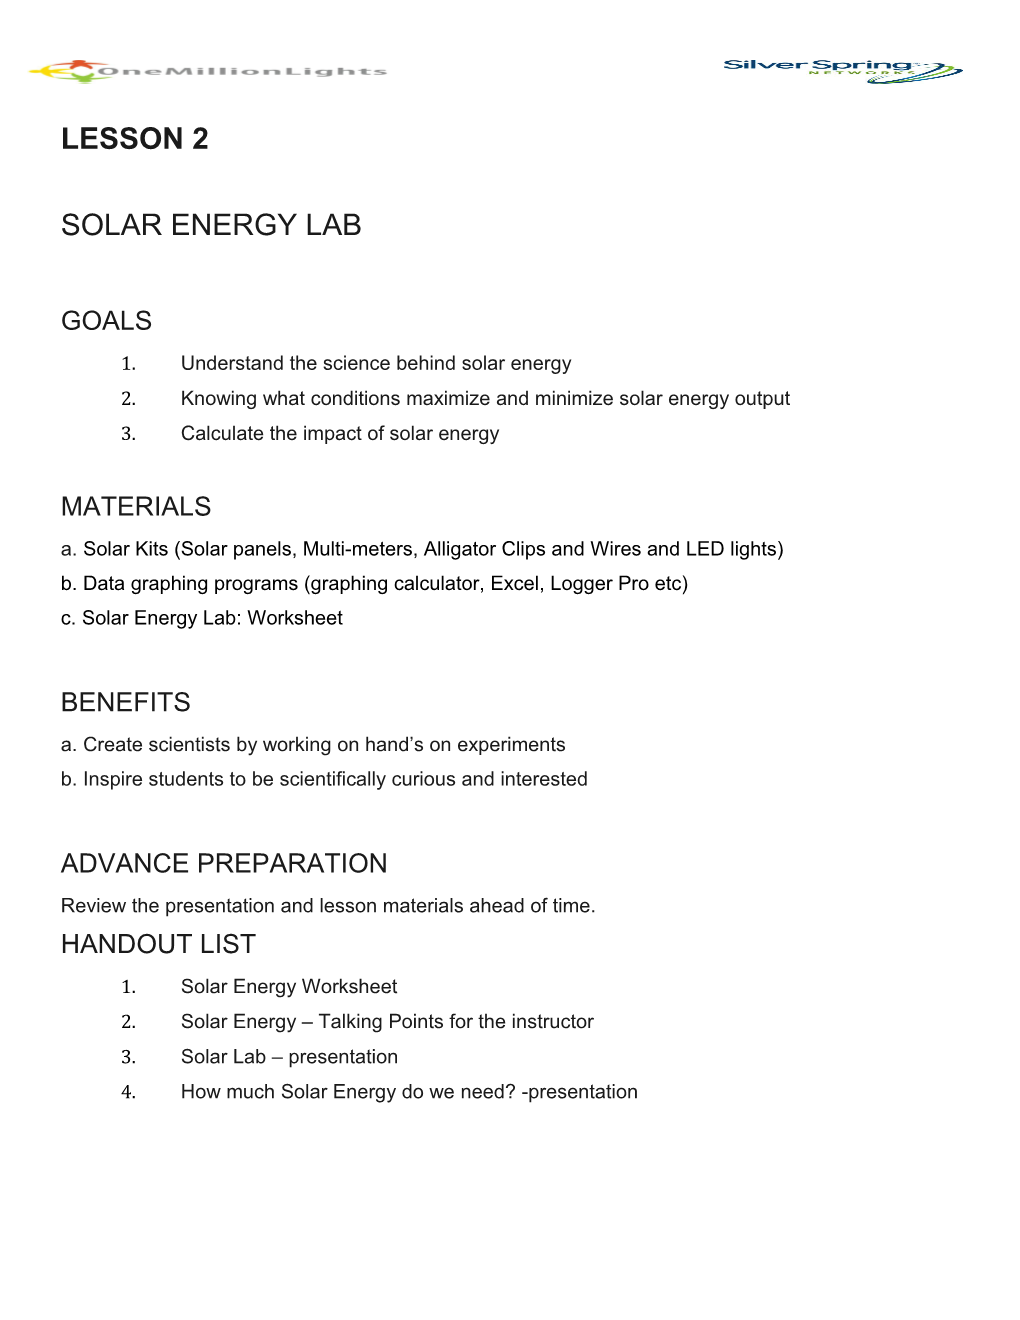 Solar Energy Lab